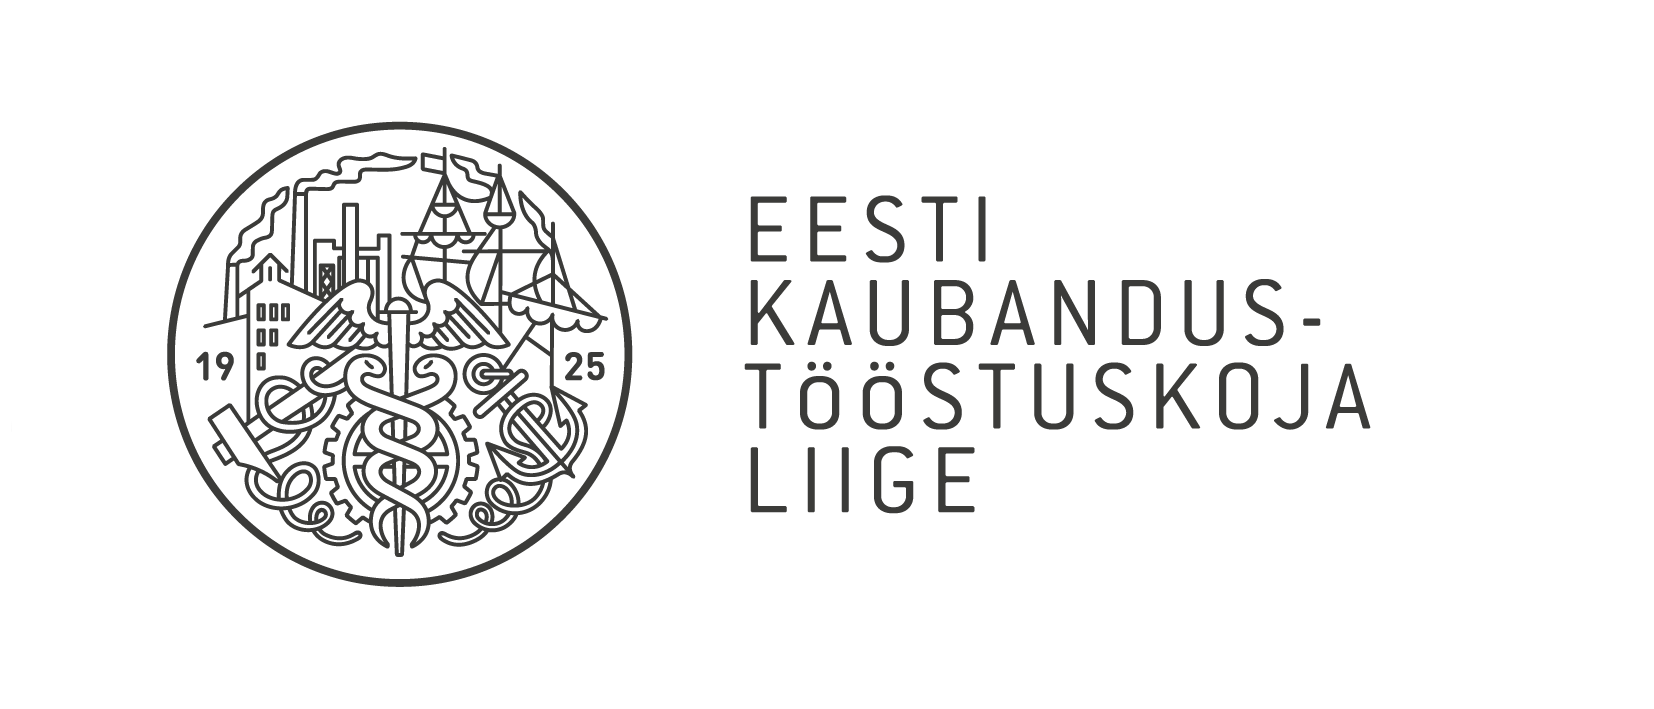 Eesti Kaubandustööstuskoja liige